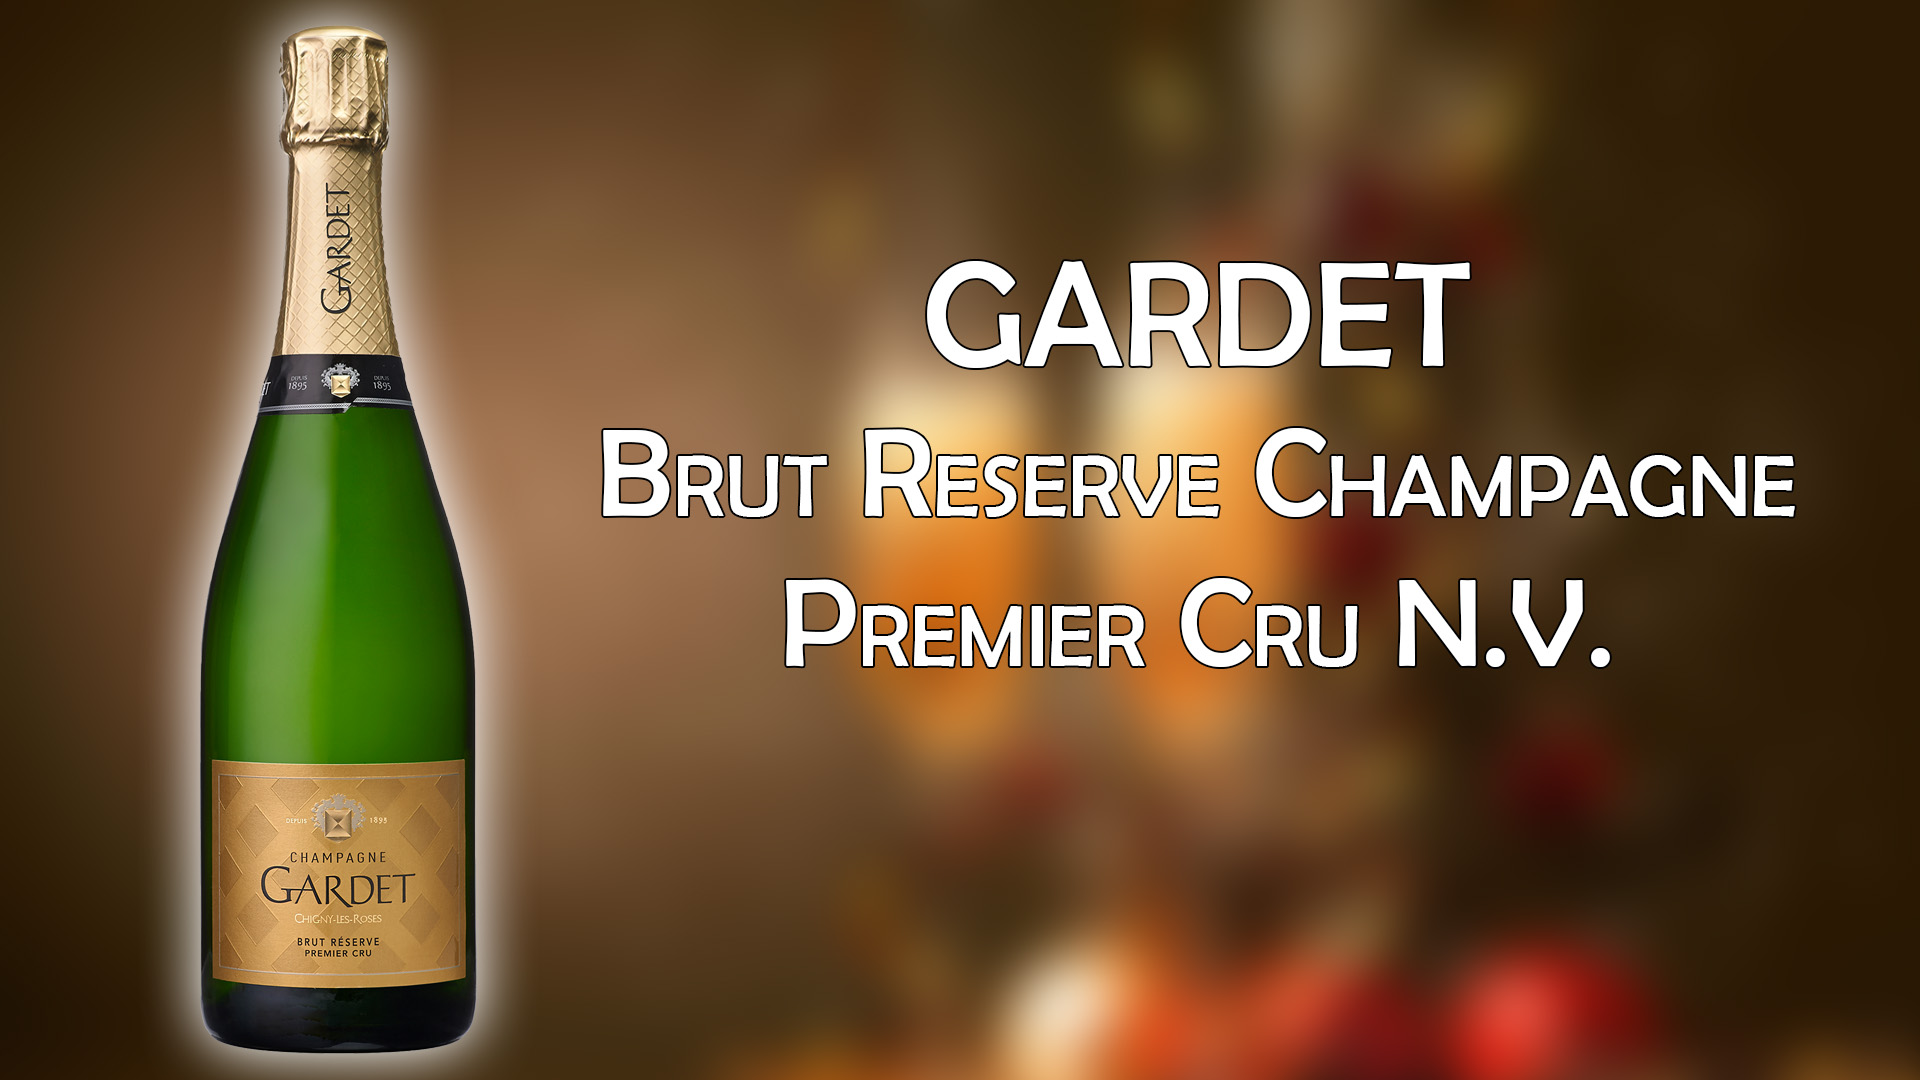 Gardet Brut Reserve Champagne Premier Cru N.V. - Best Cheap Champagne